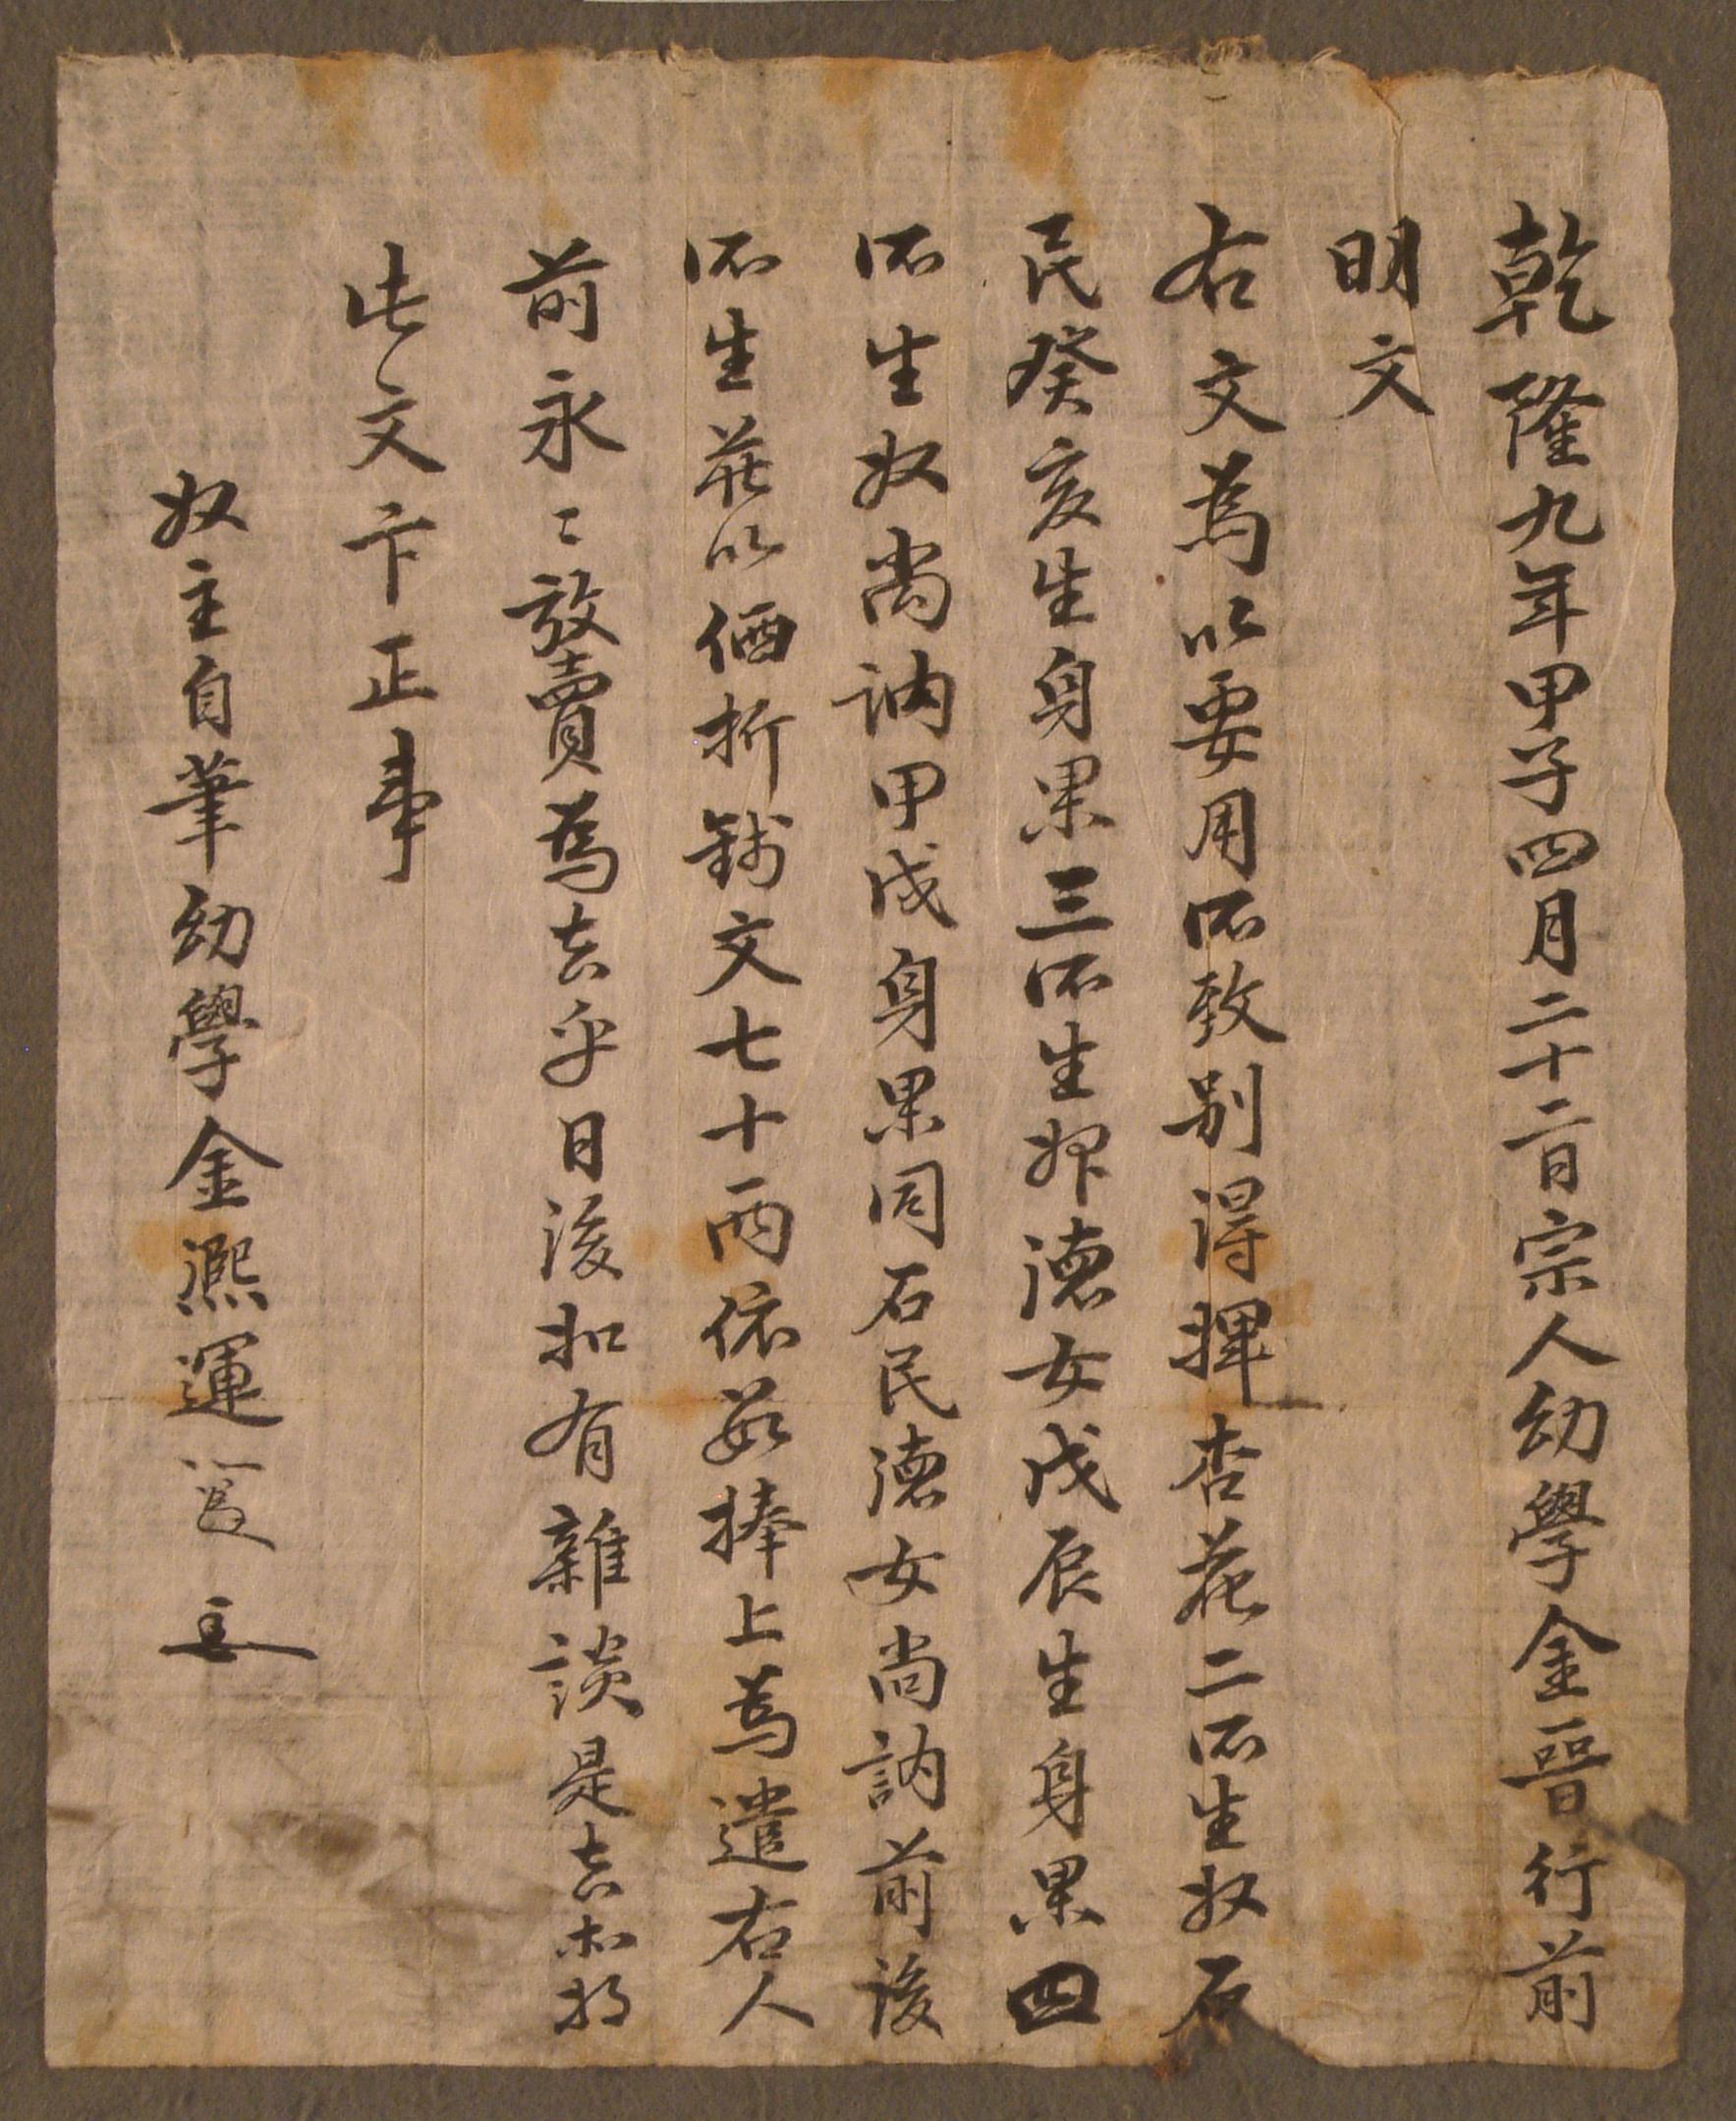 유학(幼學) 김희운(金熙運)이 1744년에 작성한 노비 방매문기